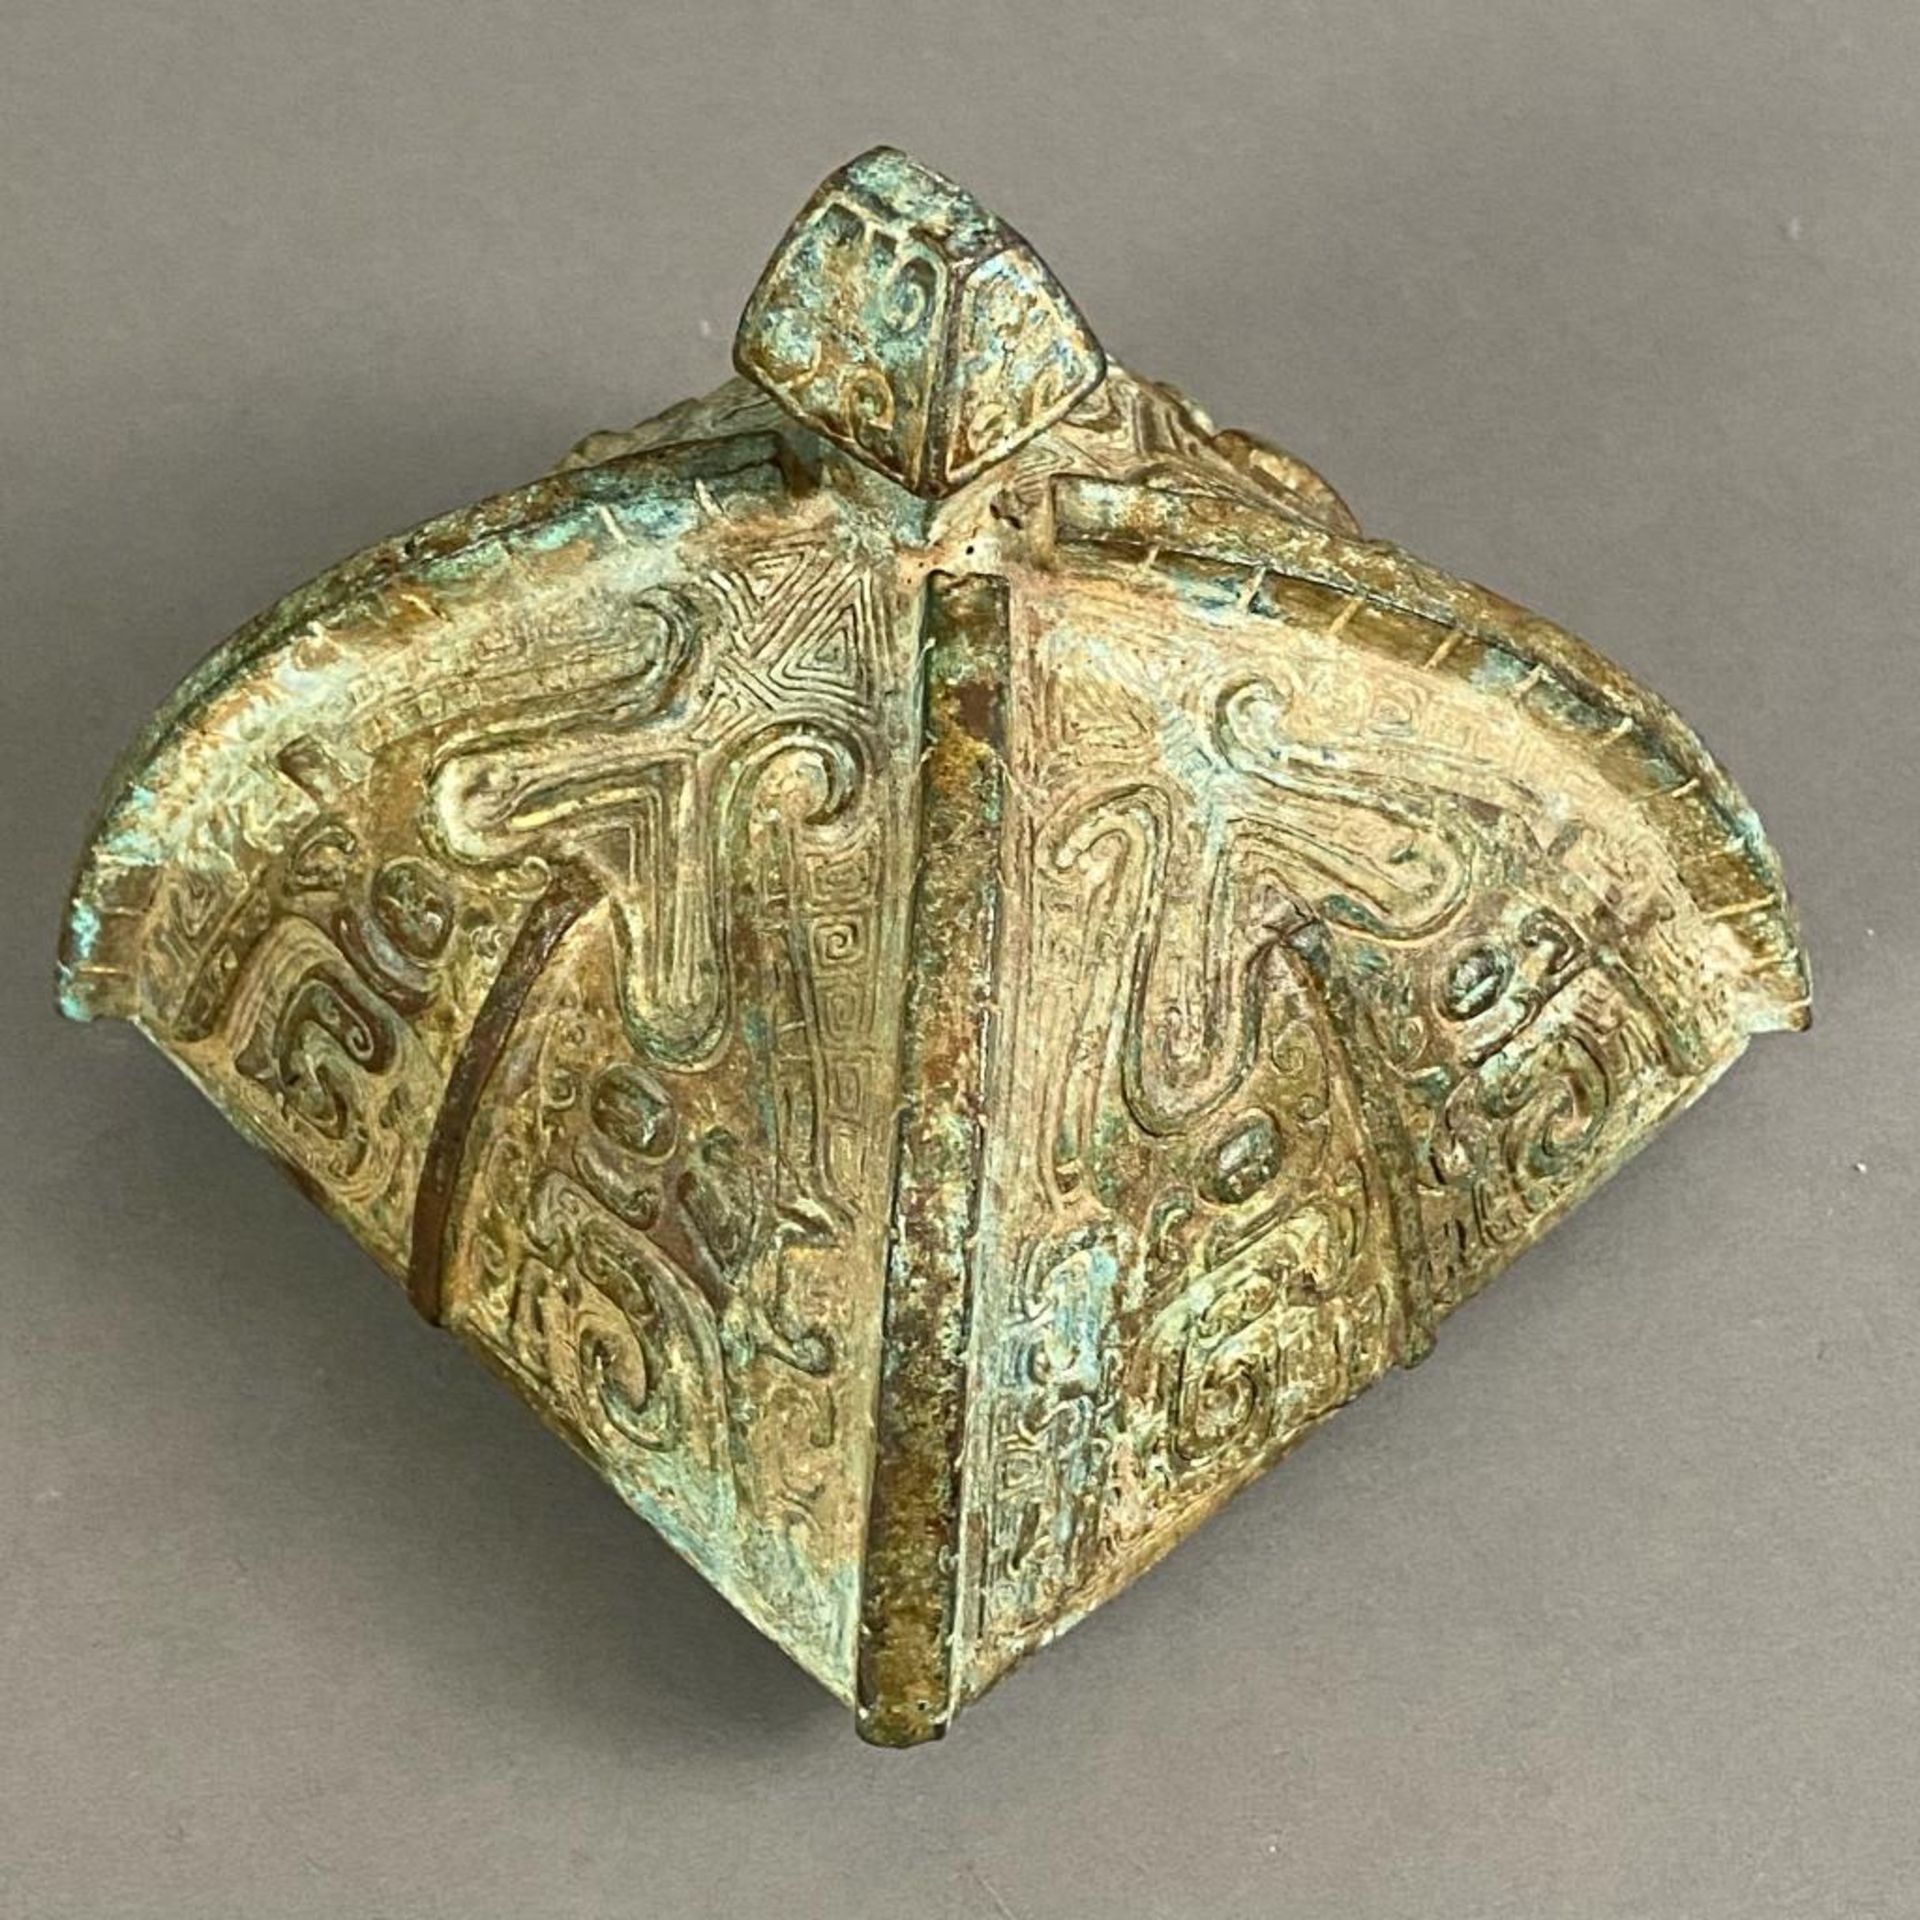 Fanghu-Vase im archaischen Stil - China, grün-braun patinierte Bronze, vierkantige gebauchte Form a - Image 3 of 10